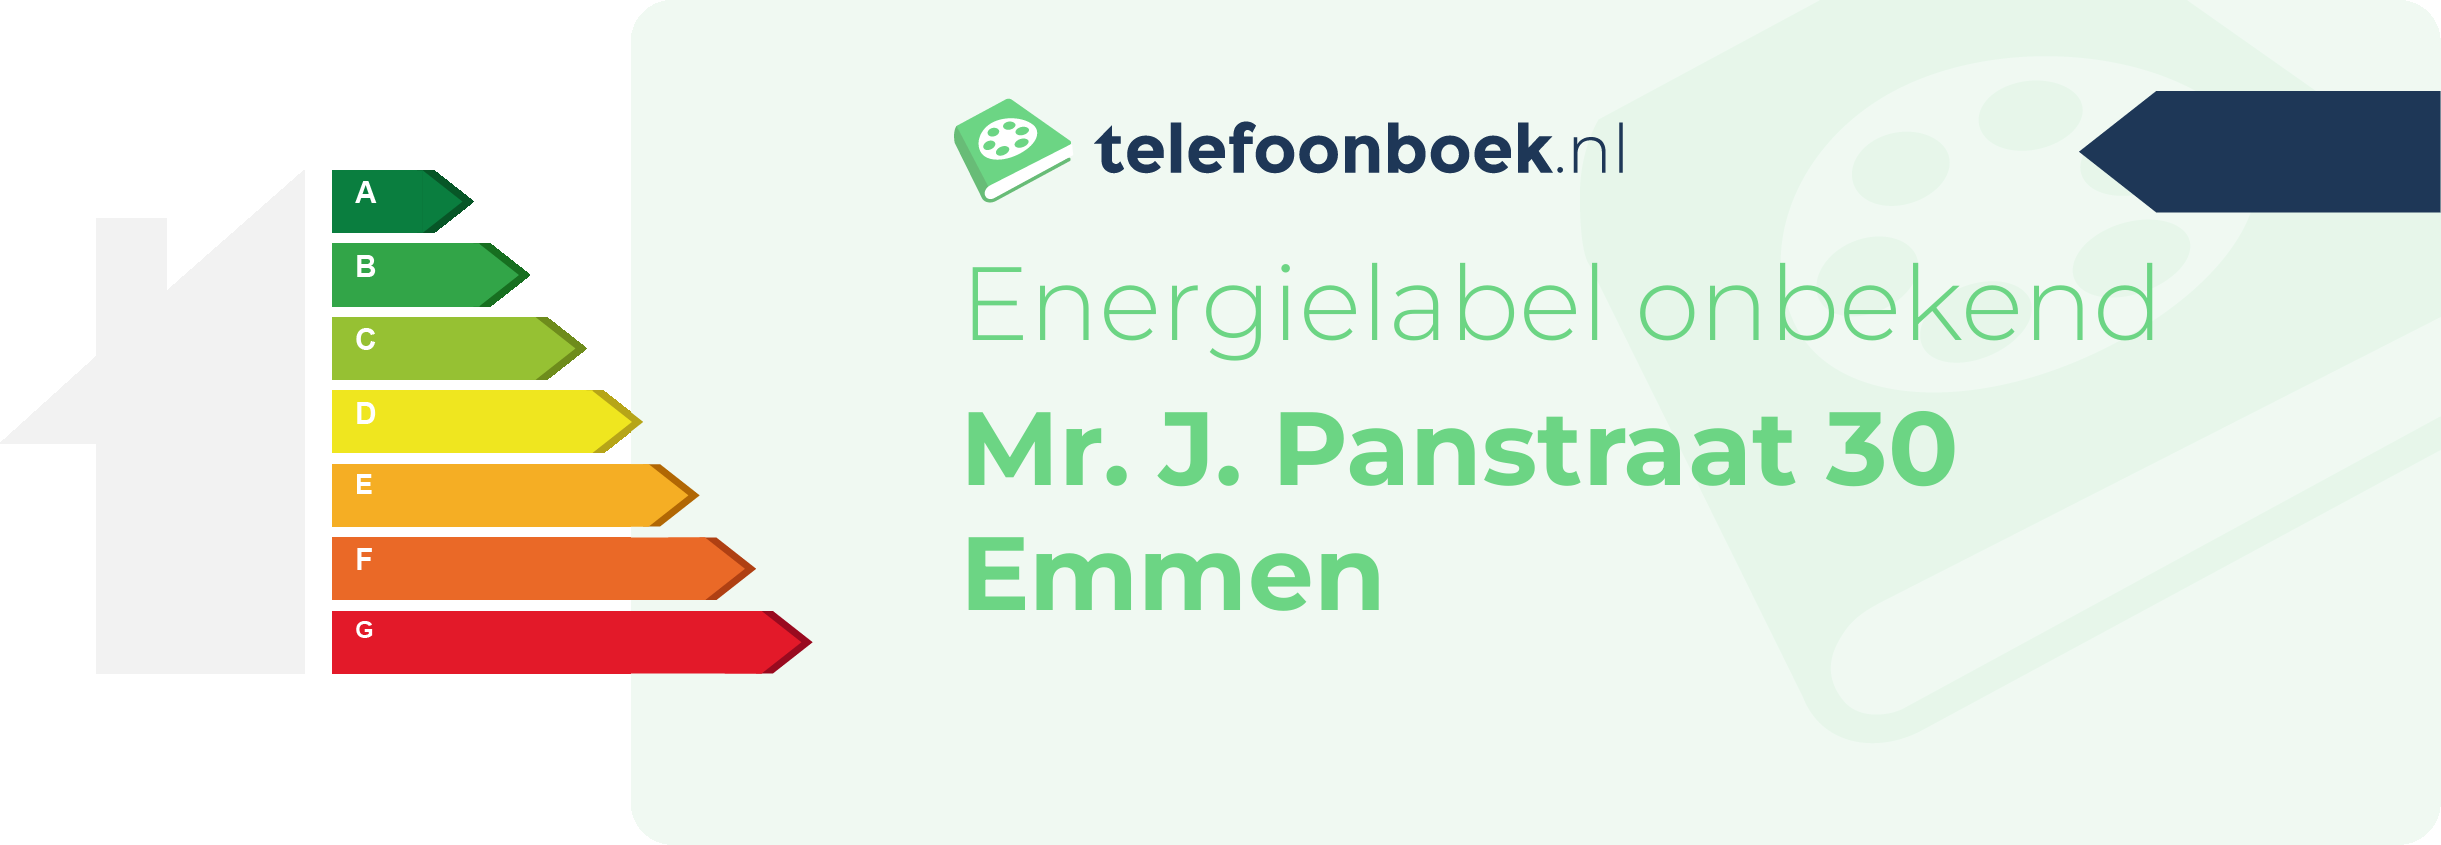 Energielabel Mr. J. Panstraat 30 Emmen